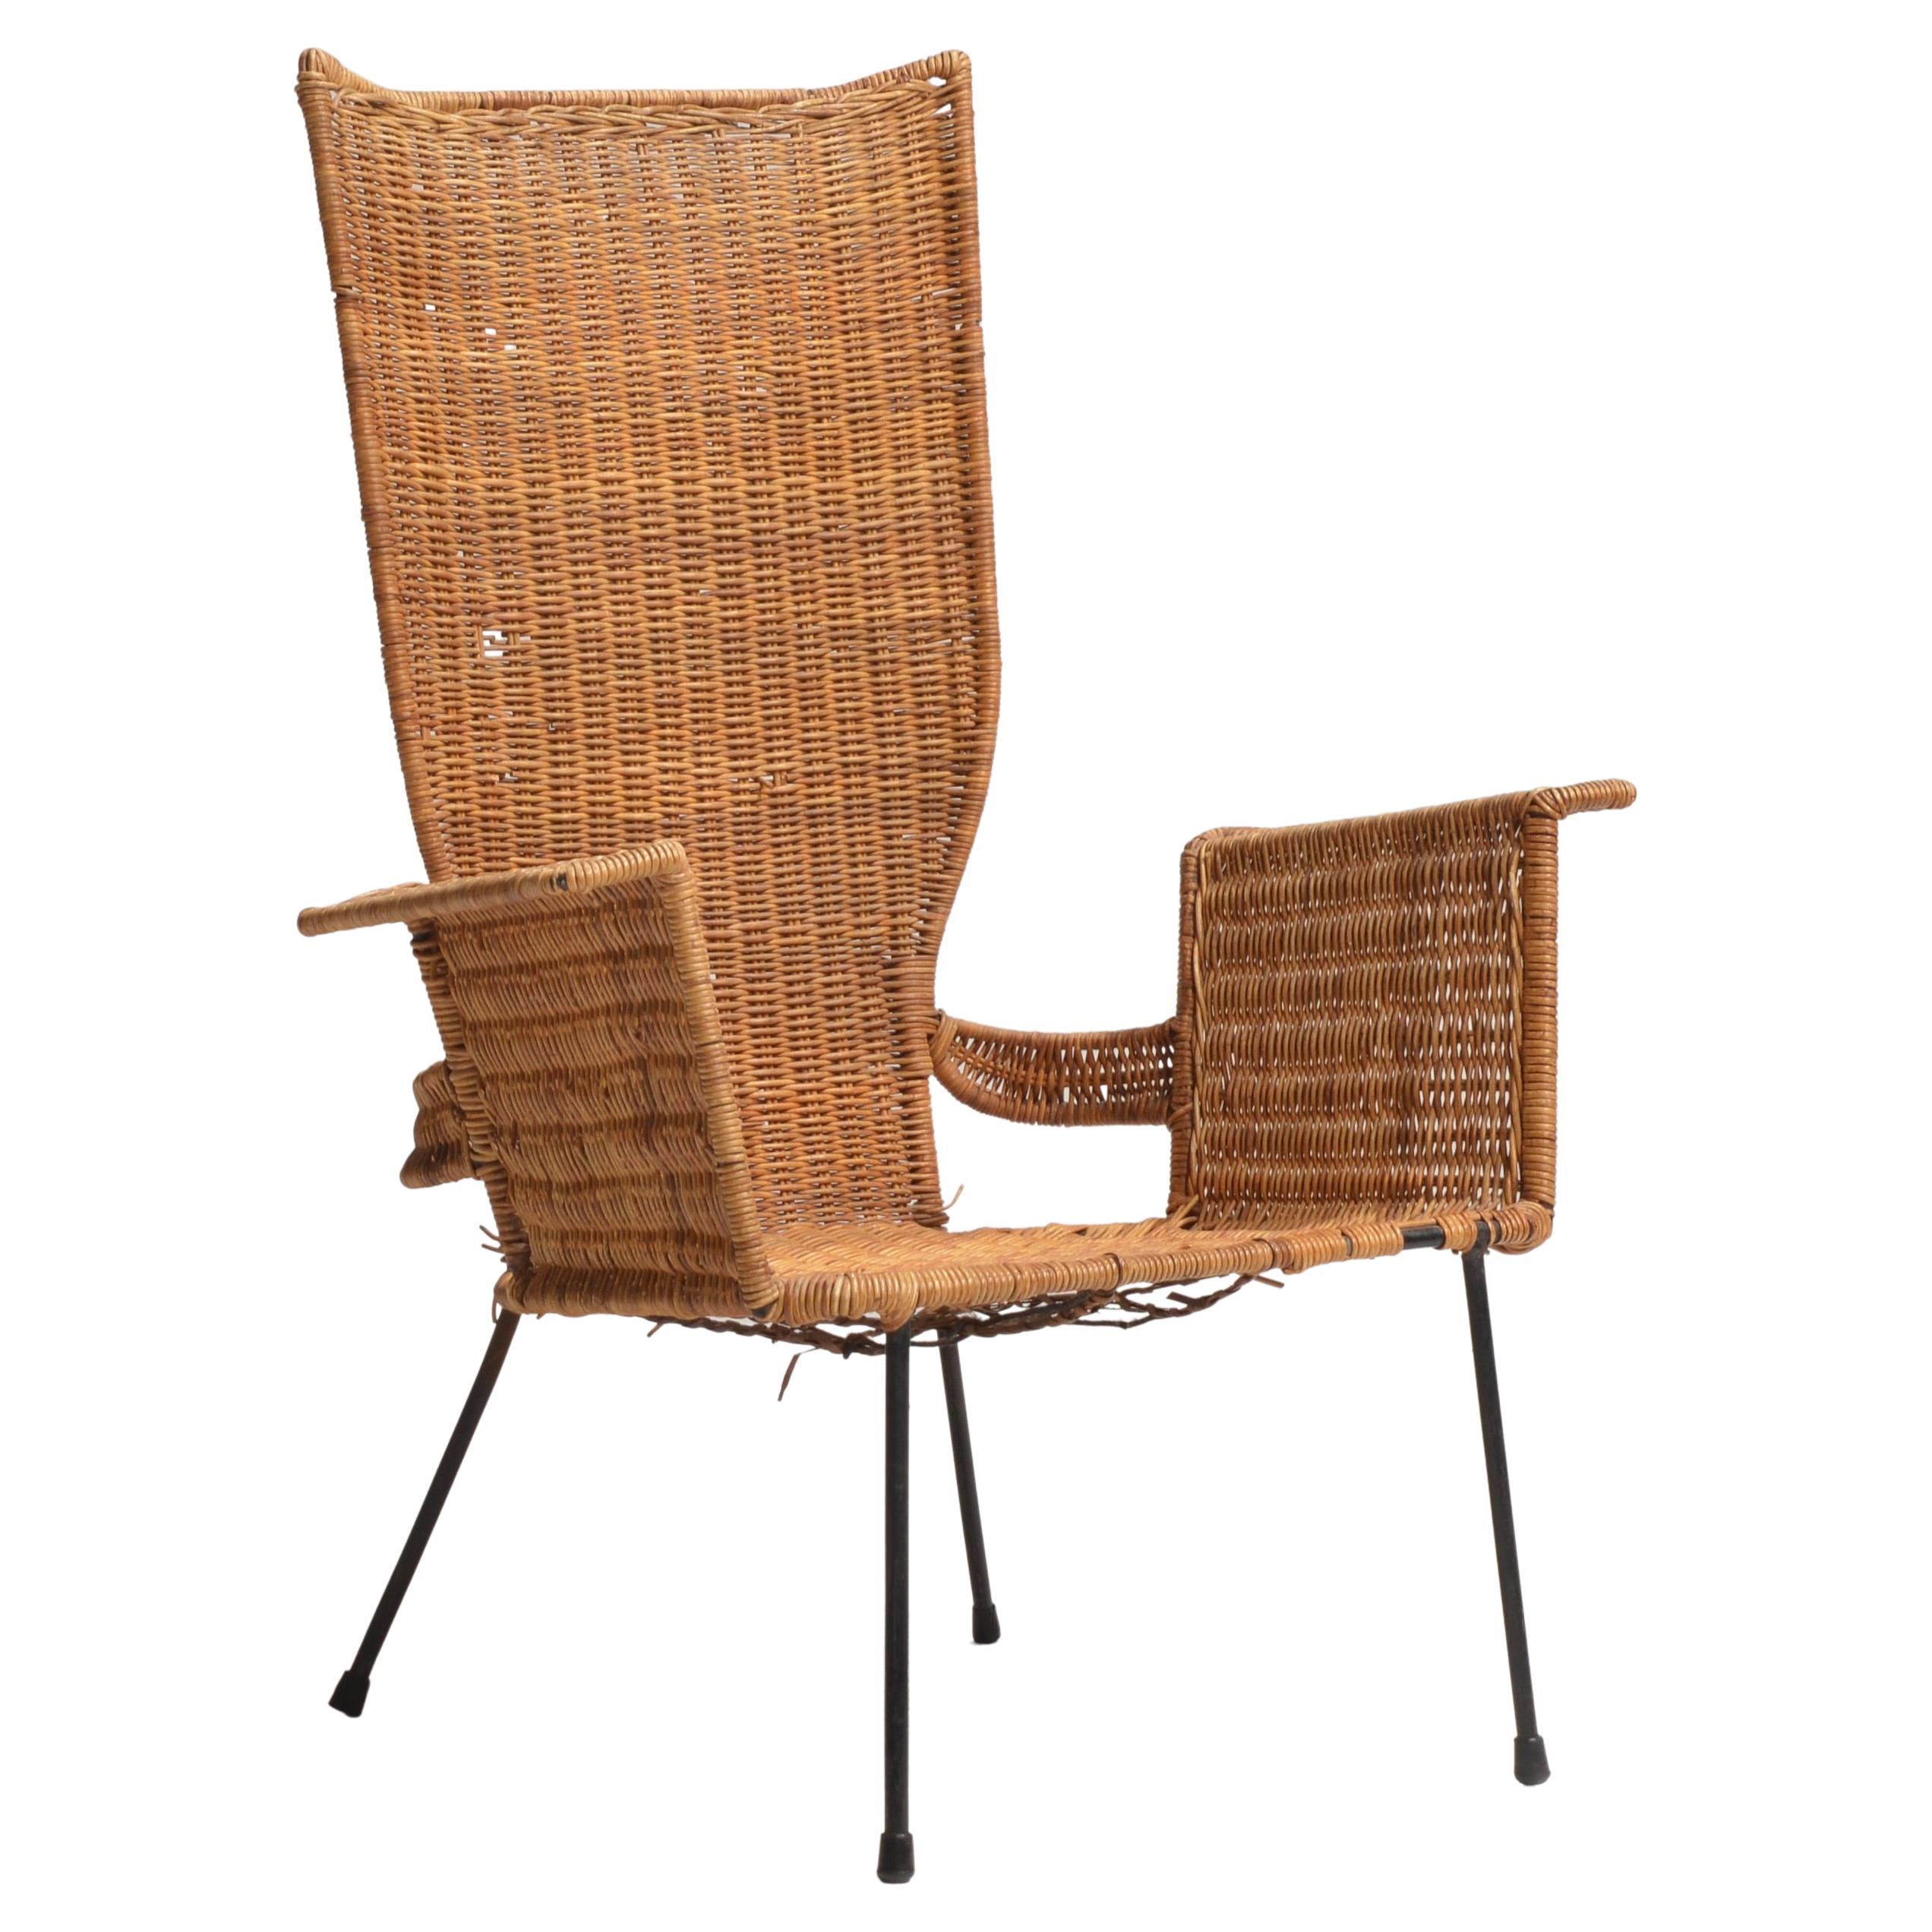 Sehr seltener Sessel aus Stahl in Rattan von Arthur Umanoff. 

Arthur Umanoff (1923-1985) ist ein amerikanischer Industriedesigner, der sowohl Möbel und Leuchten als auch Einrichtungsgegenstände entworfen hat. Umanoff absolvierte in den 1950er